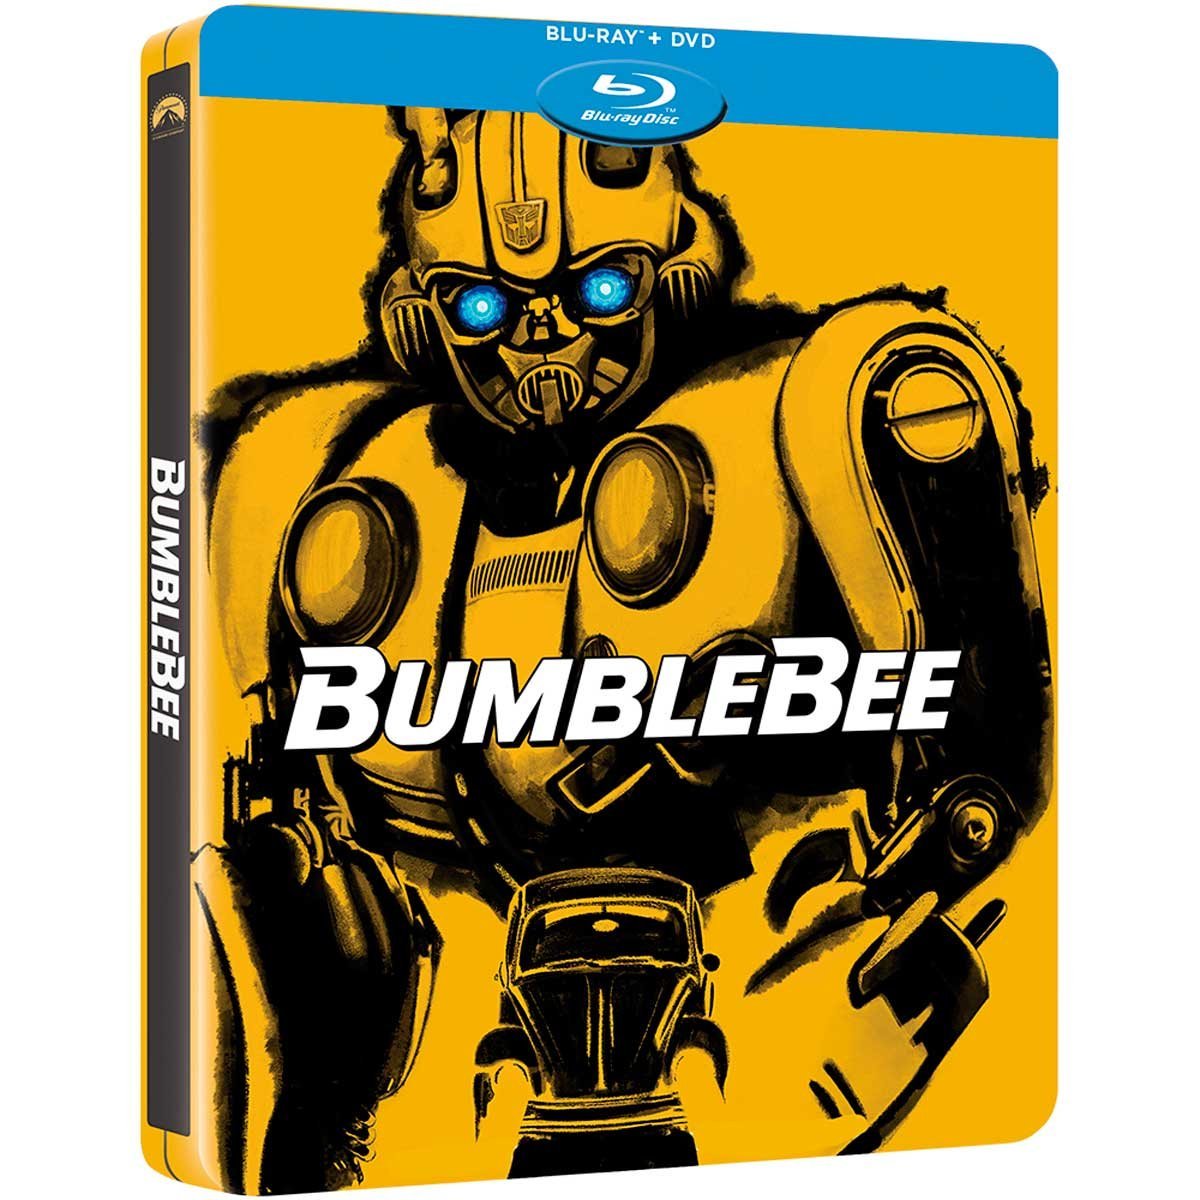 Blu Ray + Dvd Steelbook Bumblebee